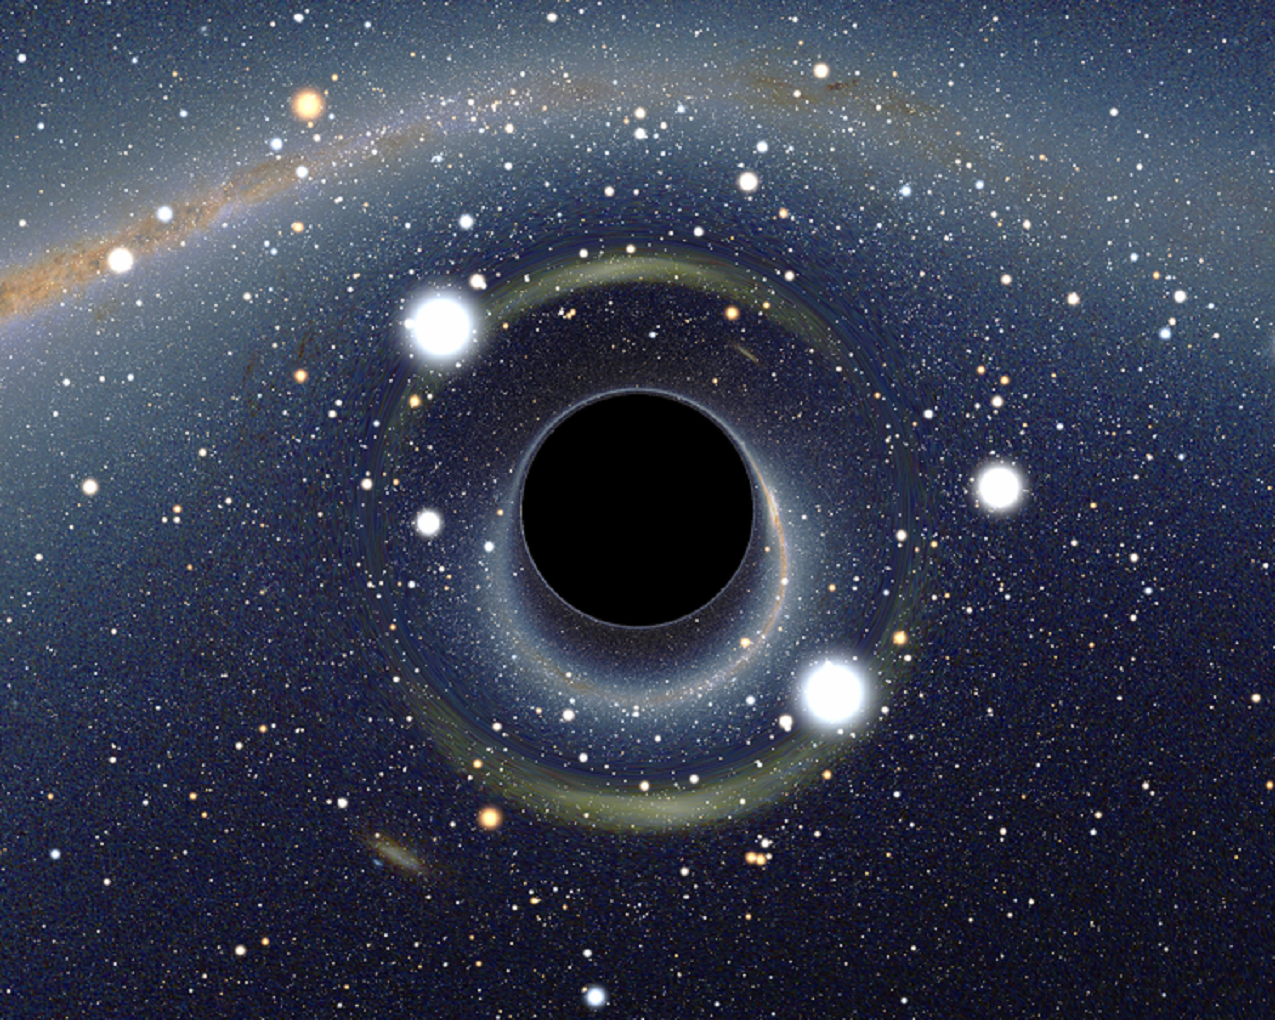 Visión artística de un agujero negro. Imagen: Alain r. Fuente: Wikipedia.